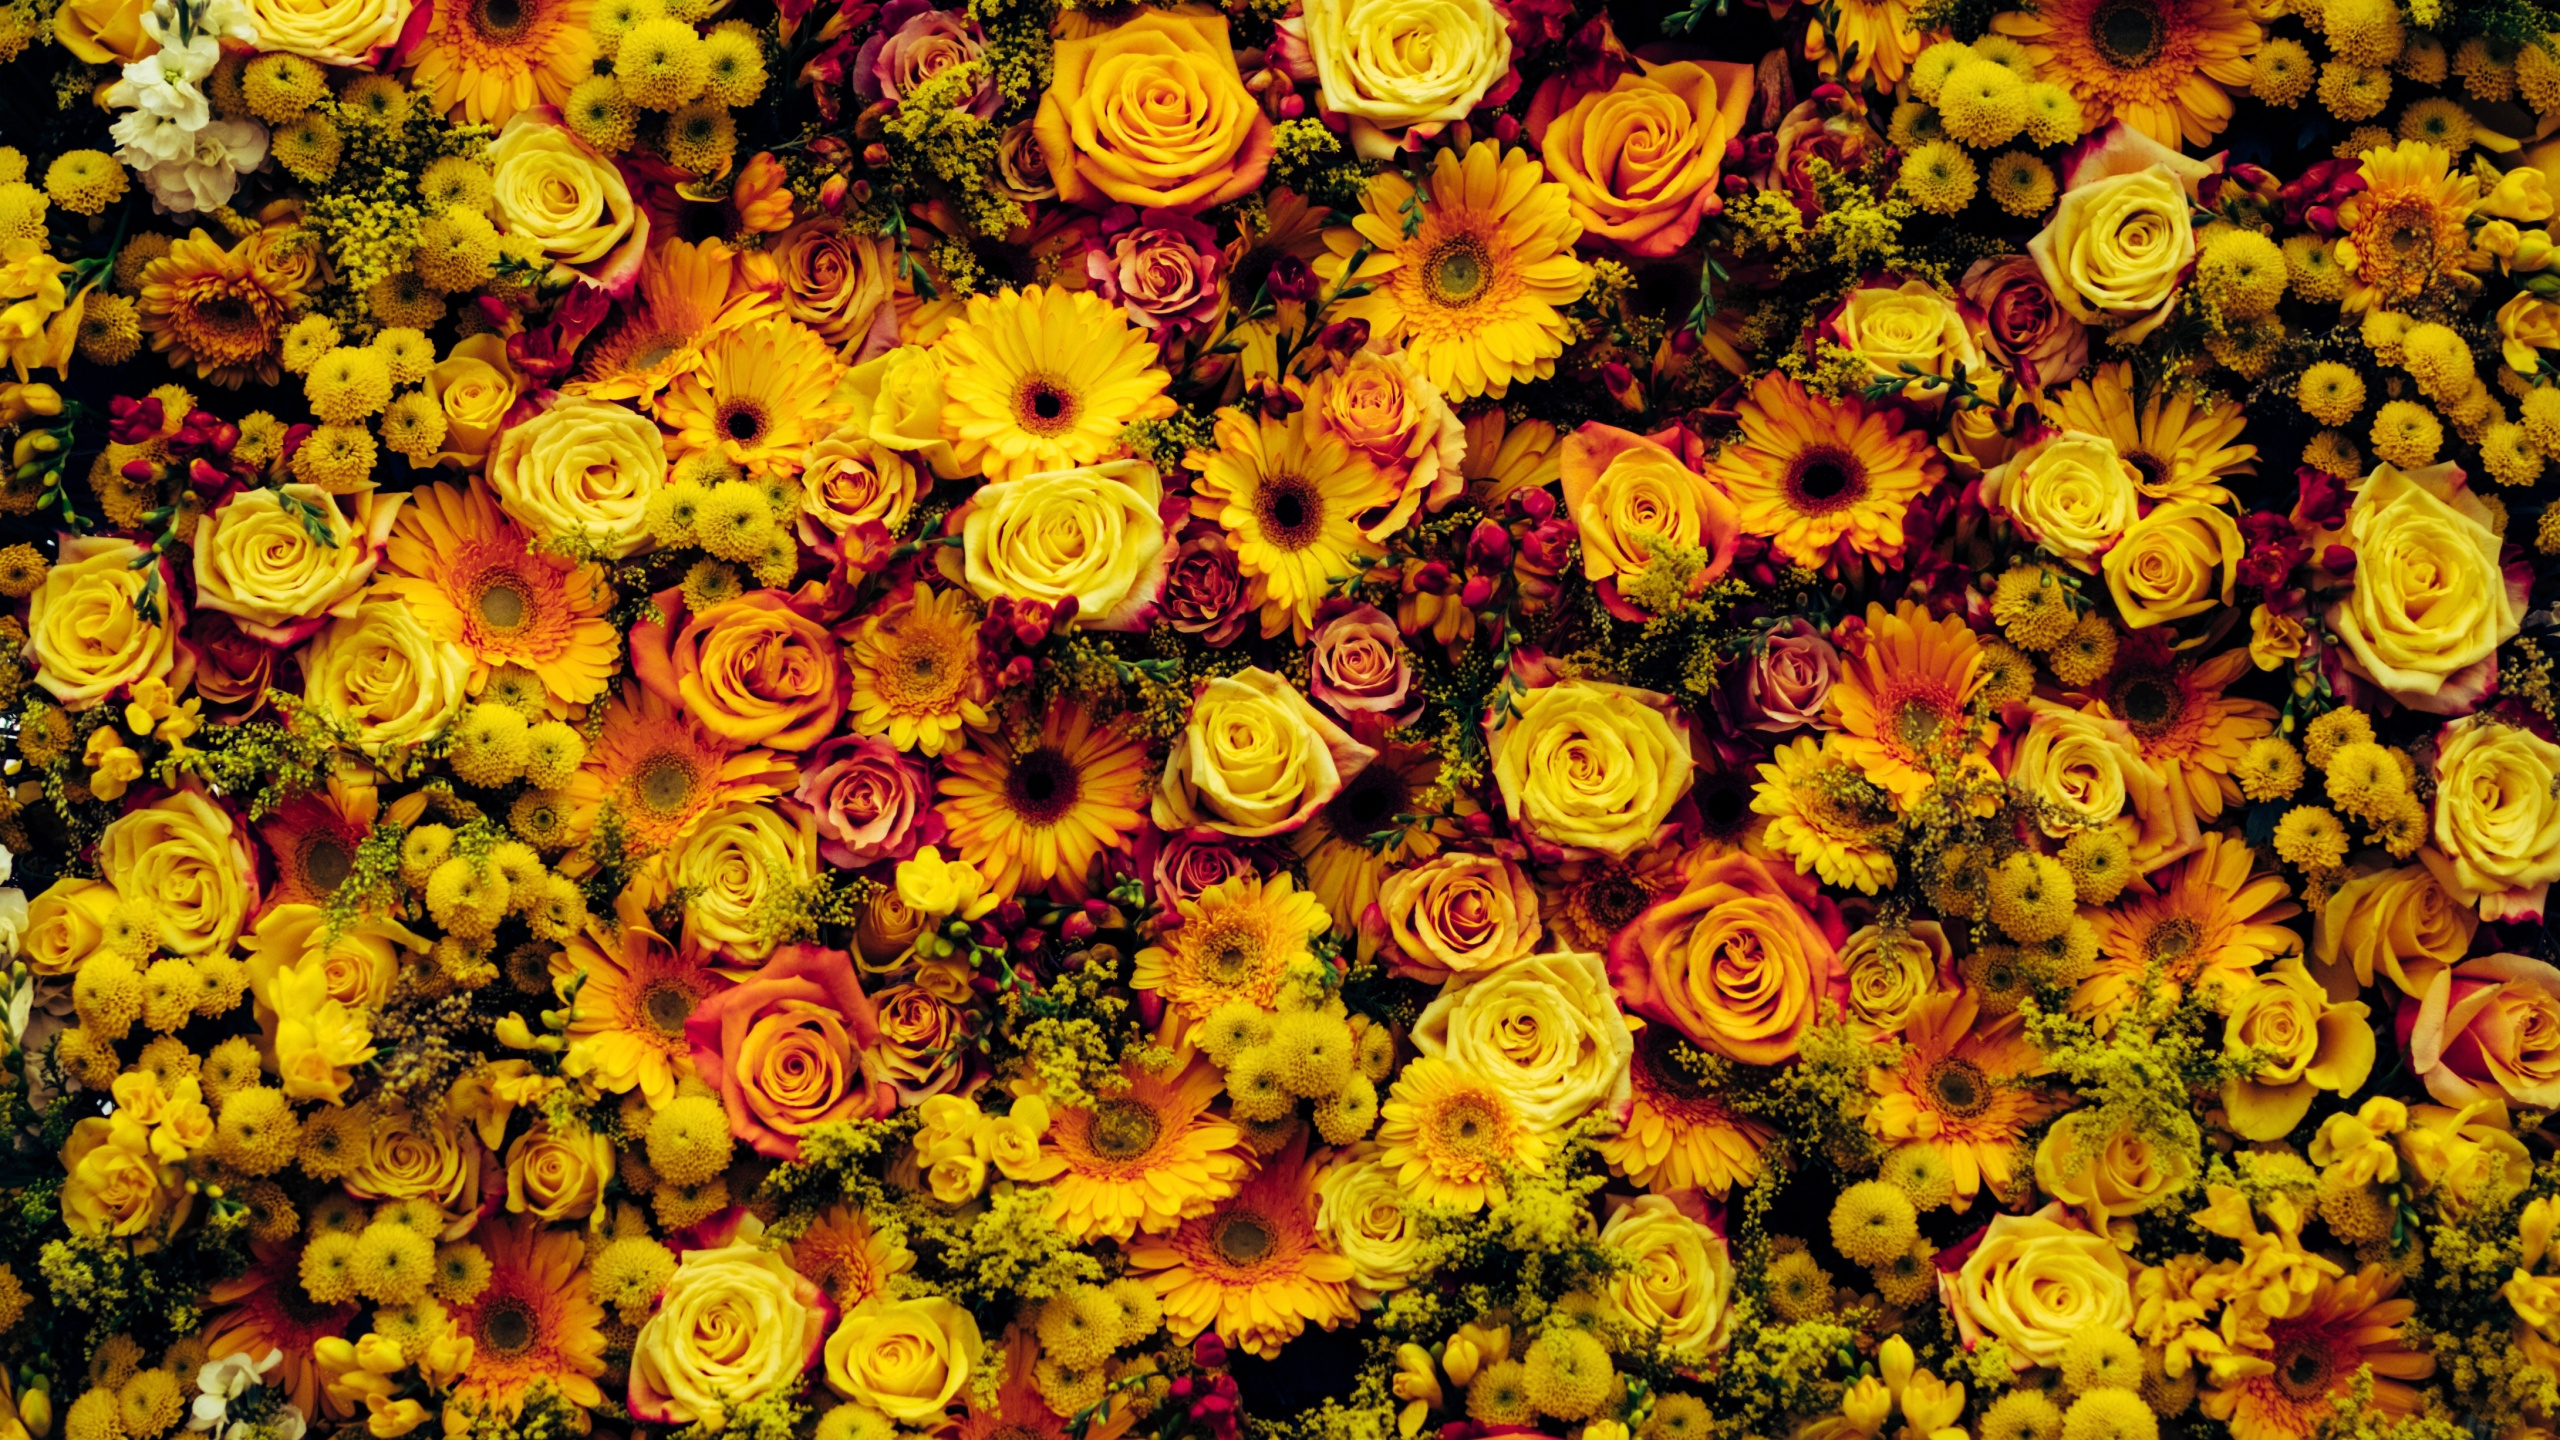 花卉设计, 黄色的, 花艺, 弹簧, 向日葵 壁纸 2560x1440 允许